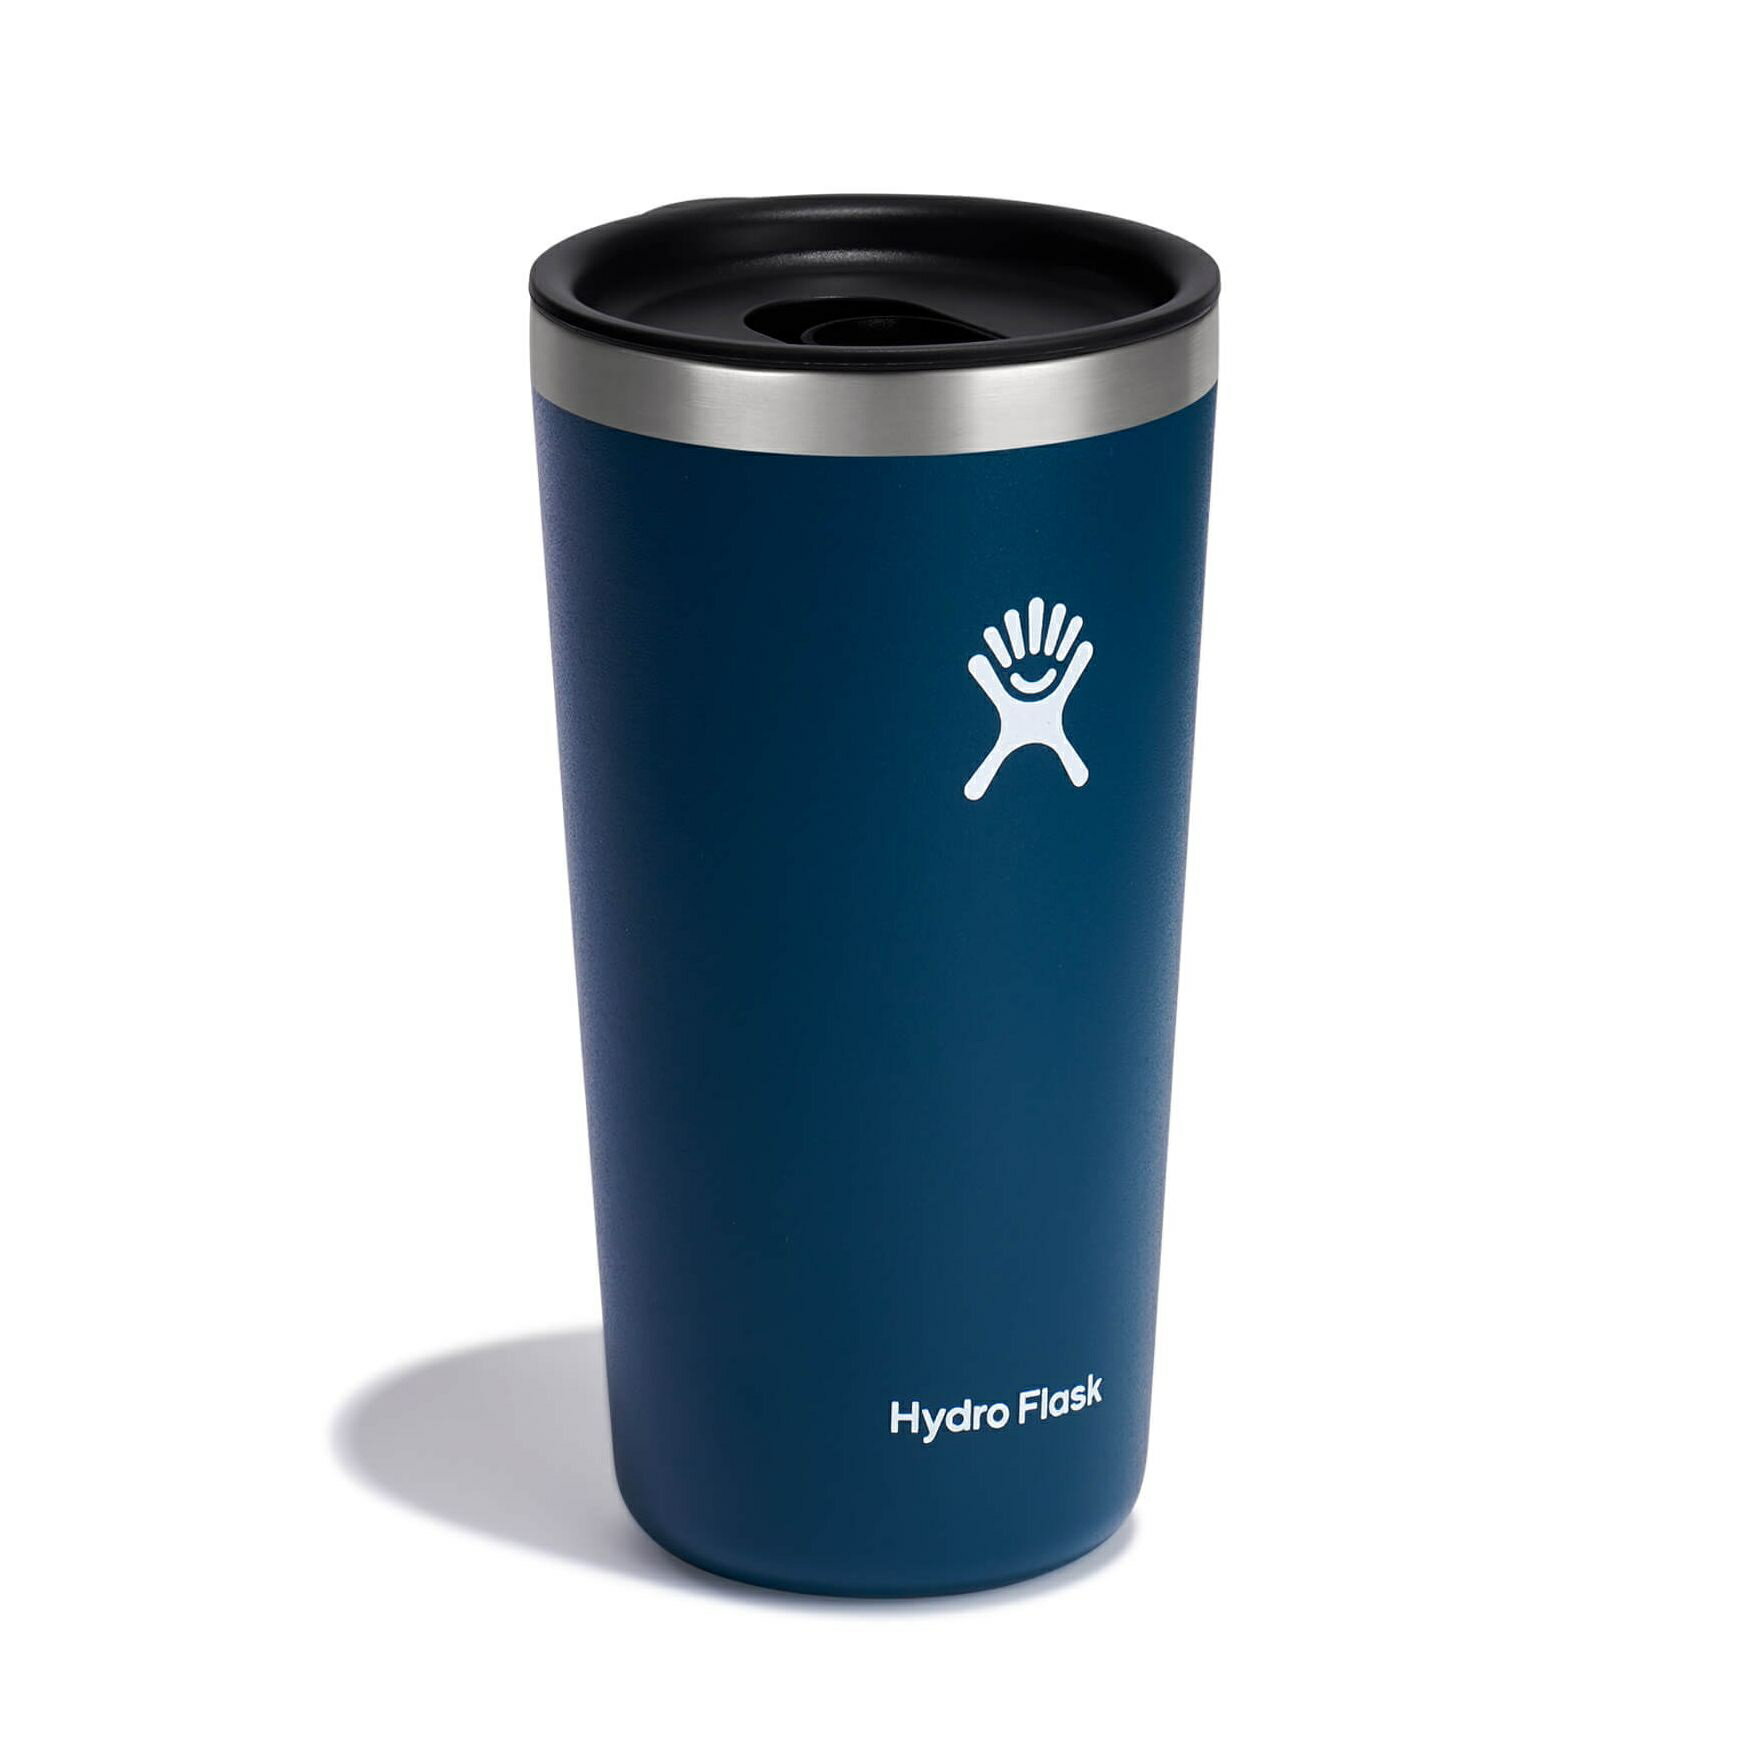 【【蘋果戶外】】Hydro Flask【隨行杯 / 591ml】20oz 保溫隨行杯 (靛藍) 附蓋 滑蓋咖啡杯 保溫杯 保冷杯 保溫瓶 TUMBLER